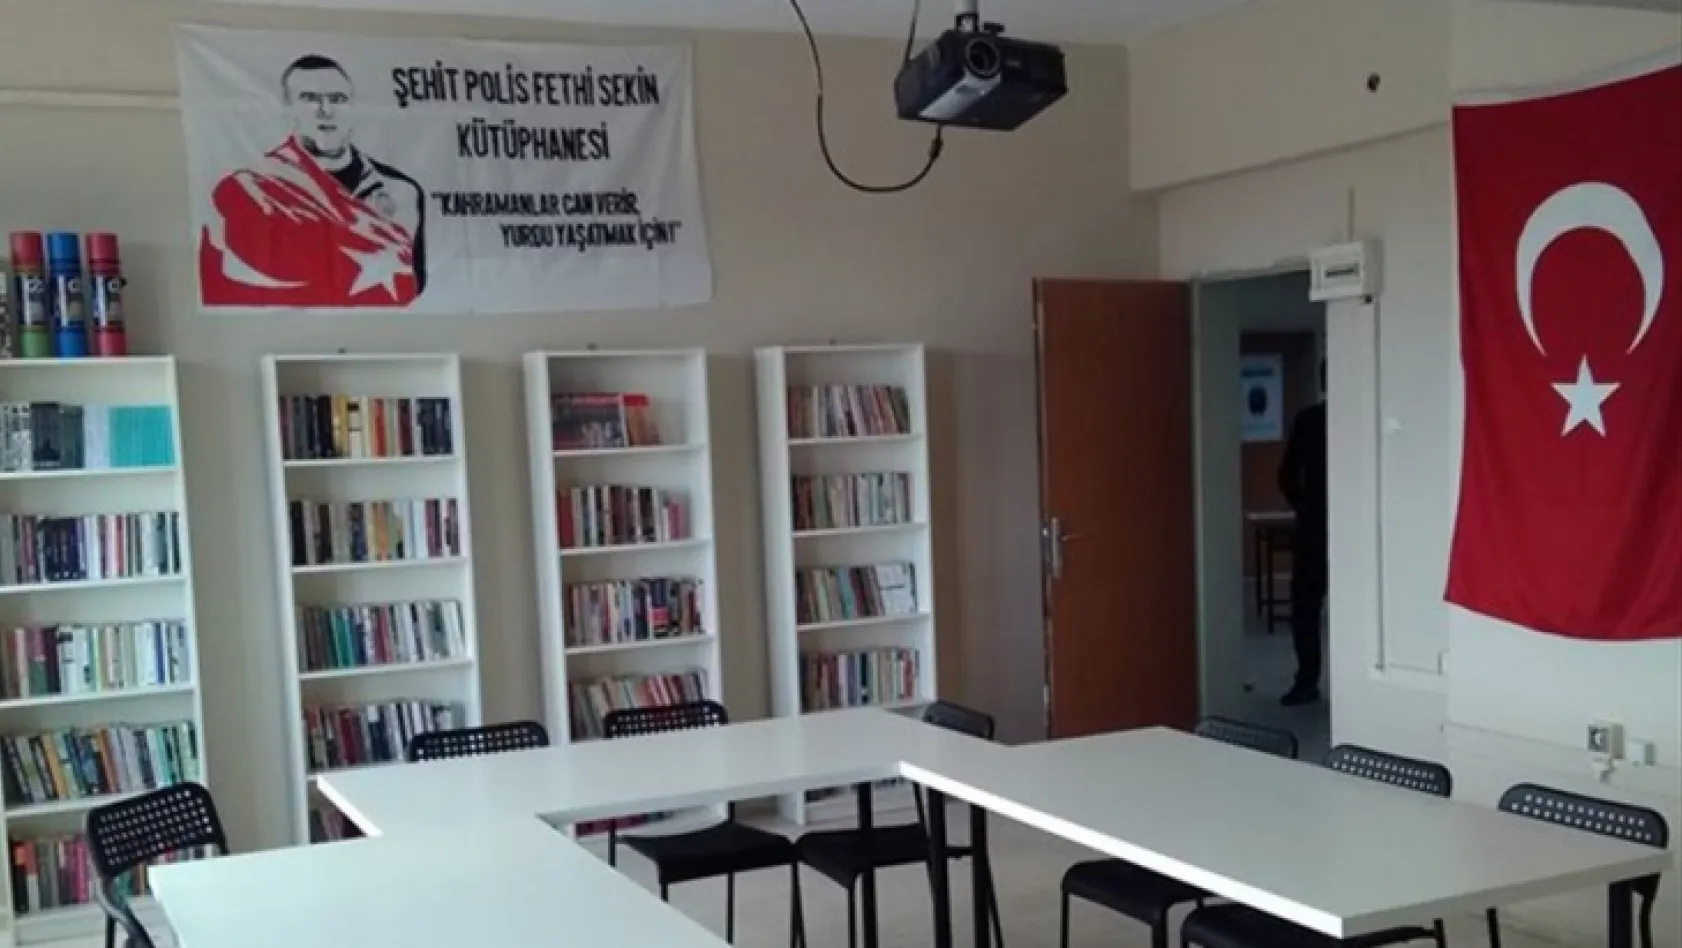 Şehit Polis Fethi Sekin'in ismi okul kütüphanesine verildi